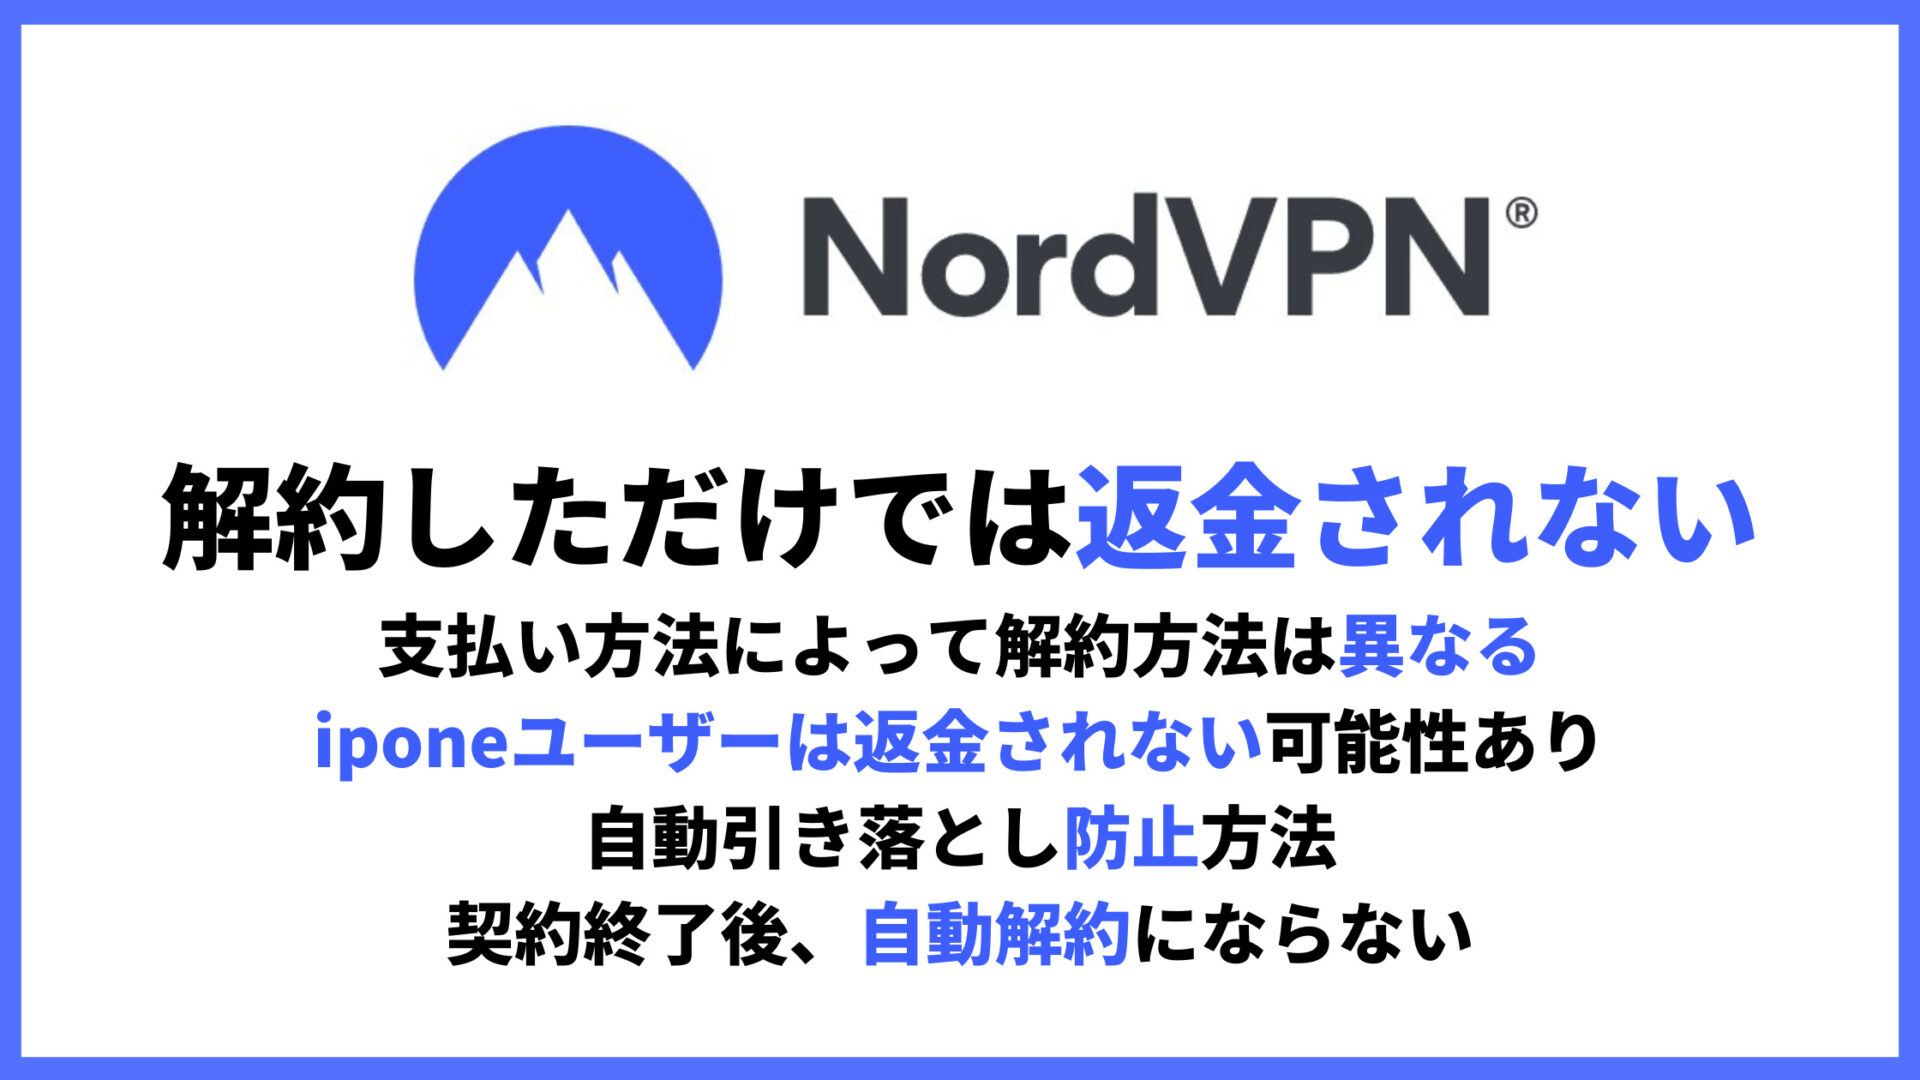 NordVPN解約・返金方法のアイキャッチ